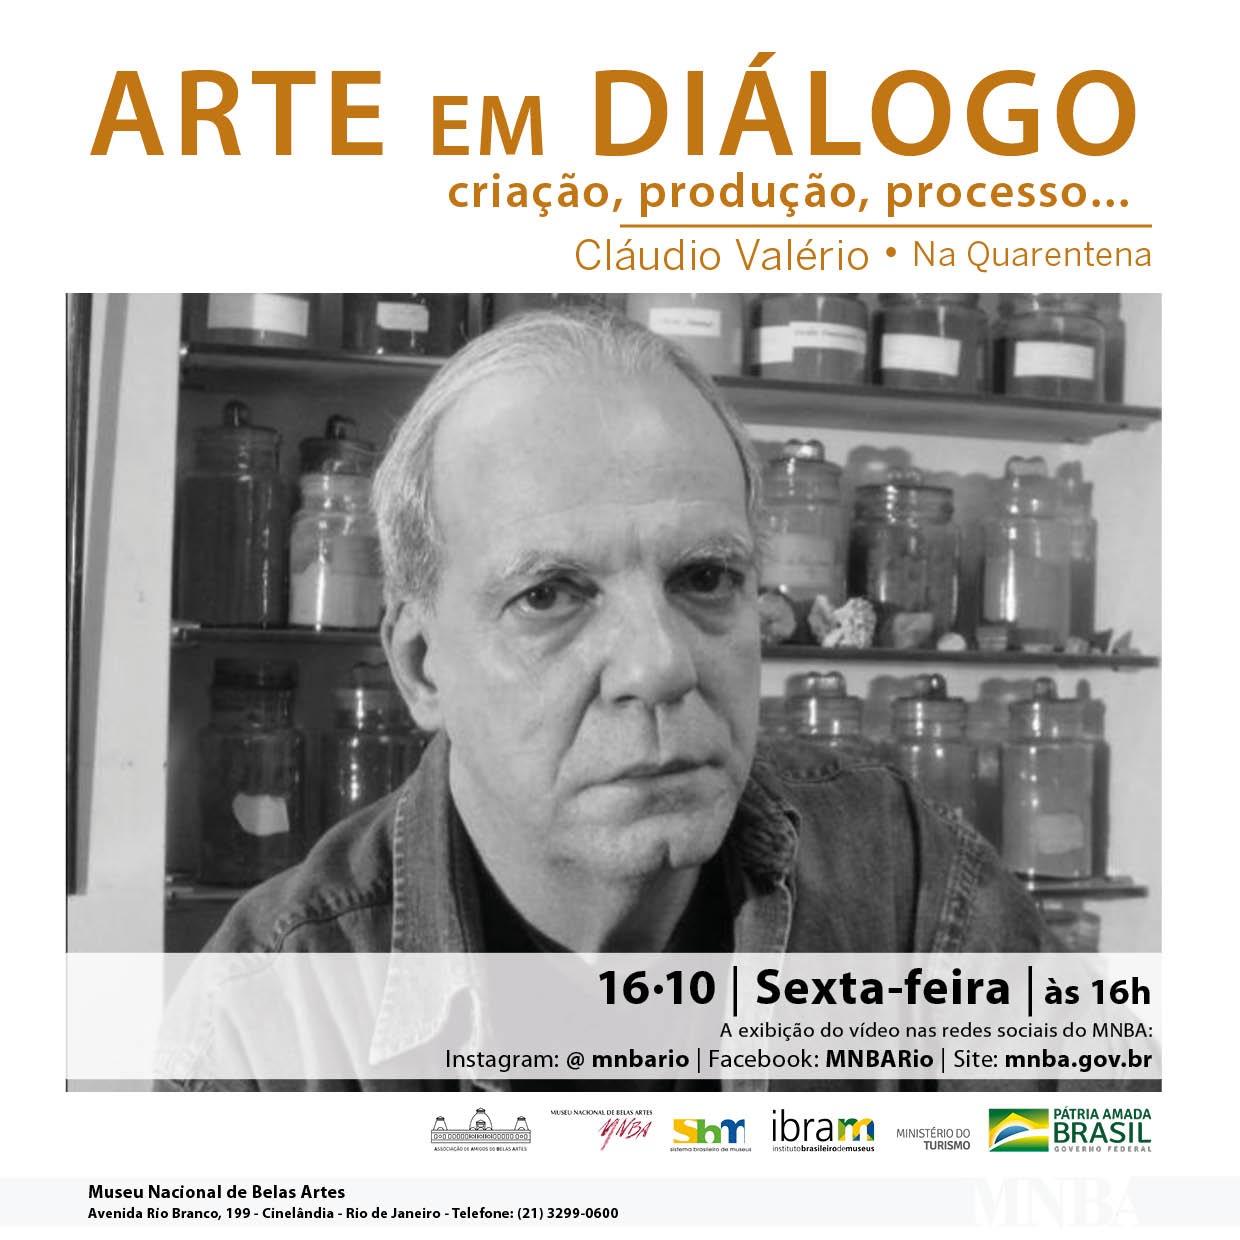 Έργο τέχνης σε διάλογο, σε καραντίνα, με τον Cláudio Valério, Φέιγ βολάν. Αποκάλυψη.